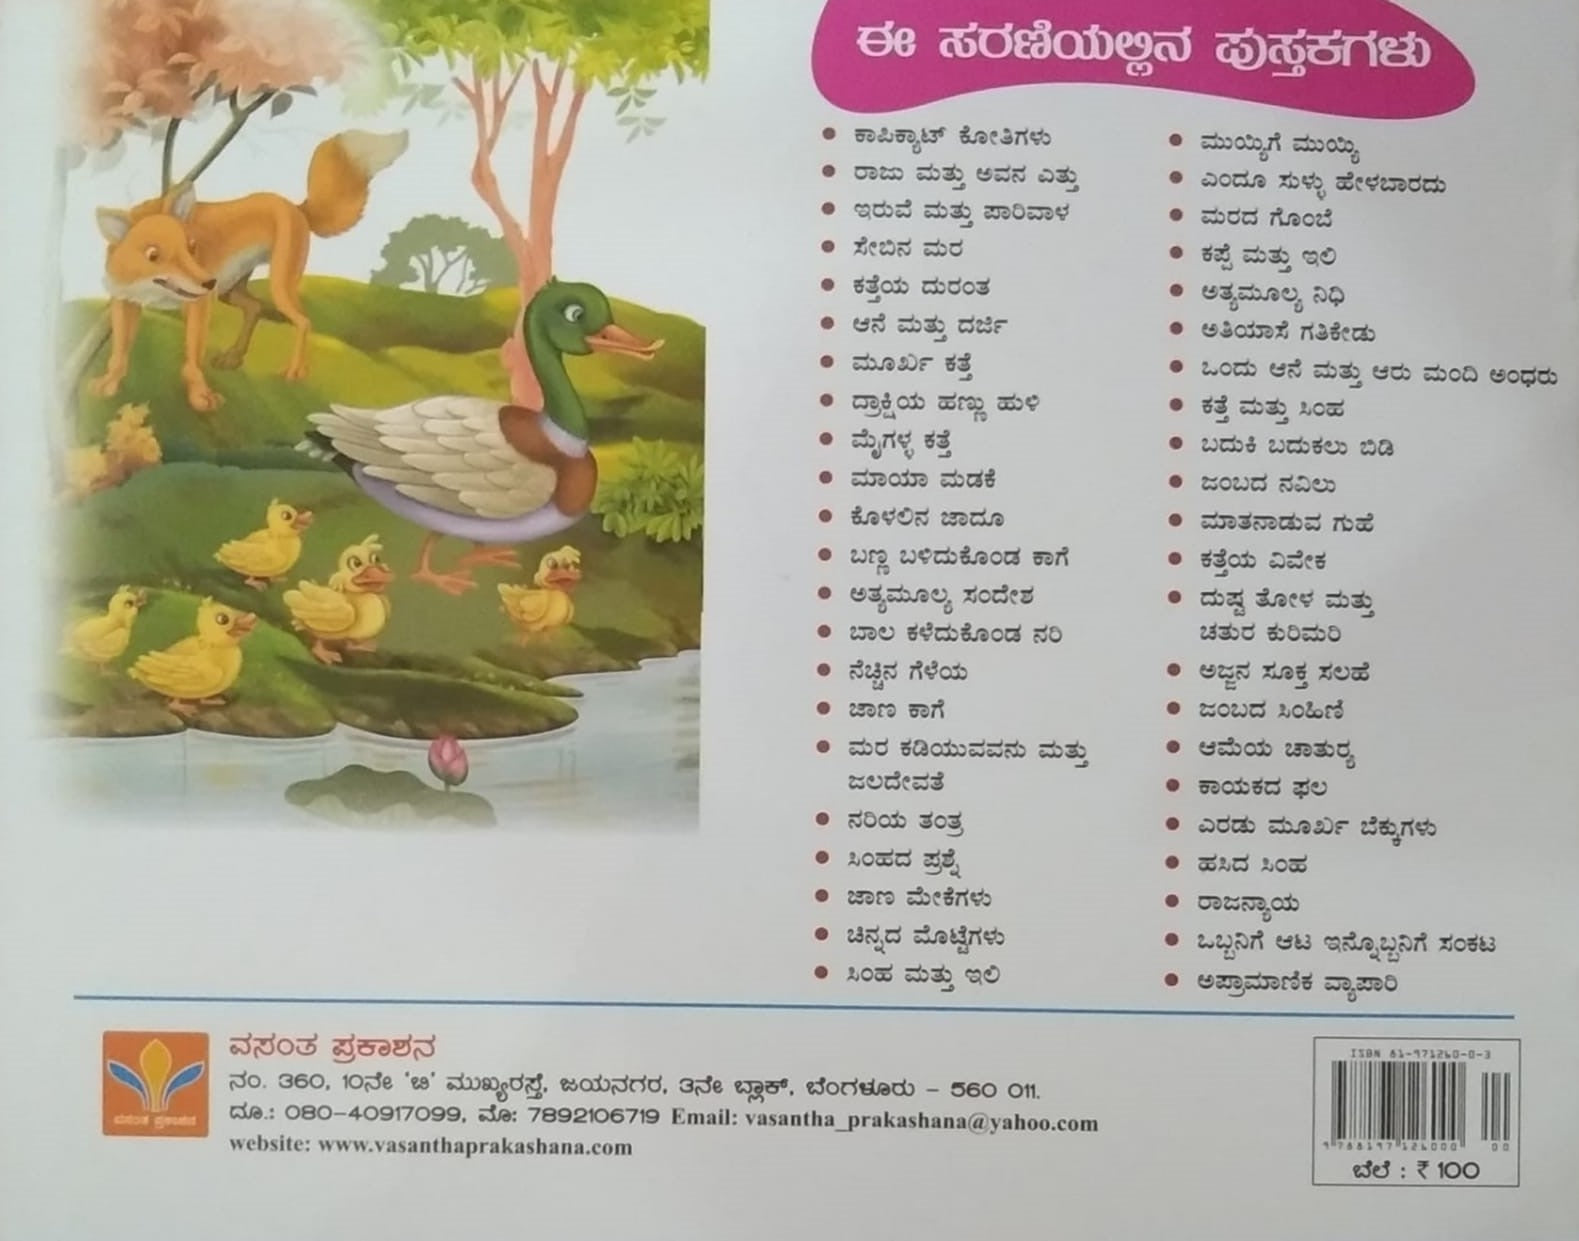 Maatanaaduva Guhe, Children's Stories Book edited by S. Pattabhirama, Published by Vasantha Prakashana